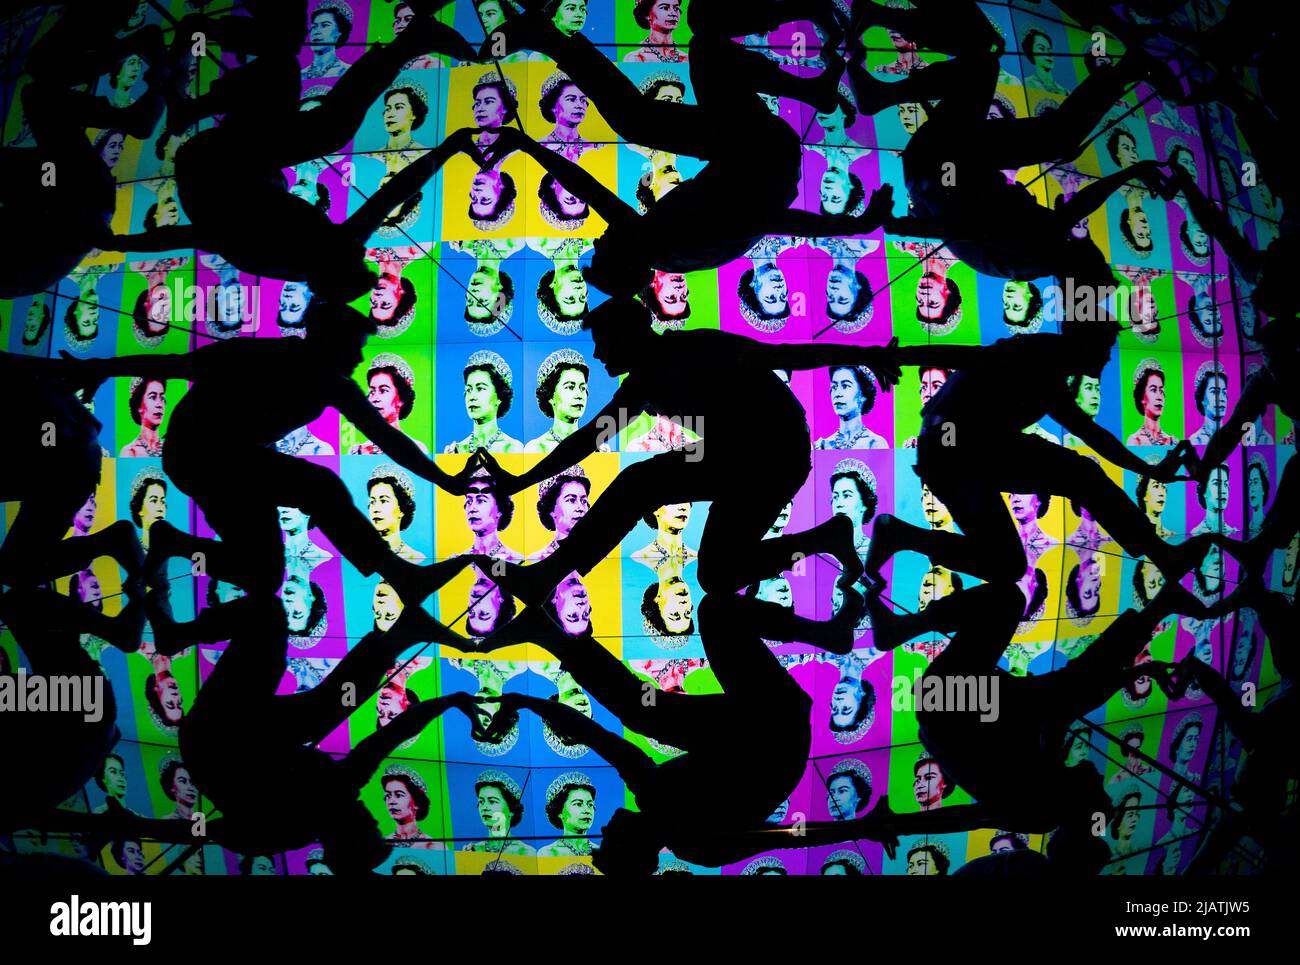 La guida turistica Josh Knowles guarda da vicino una nuova grafica pop art colorata della Regina nel Caleidoscopio Gigante al Camera Obscura e World of Illusions di Edimburgo, per celebrare il Giubileo del platino. Data foto: Mercoledì 1 giugno 2022. Foto Stock